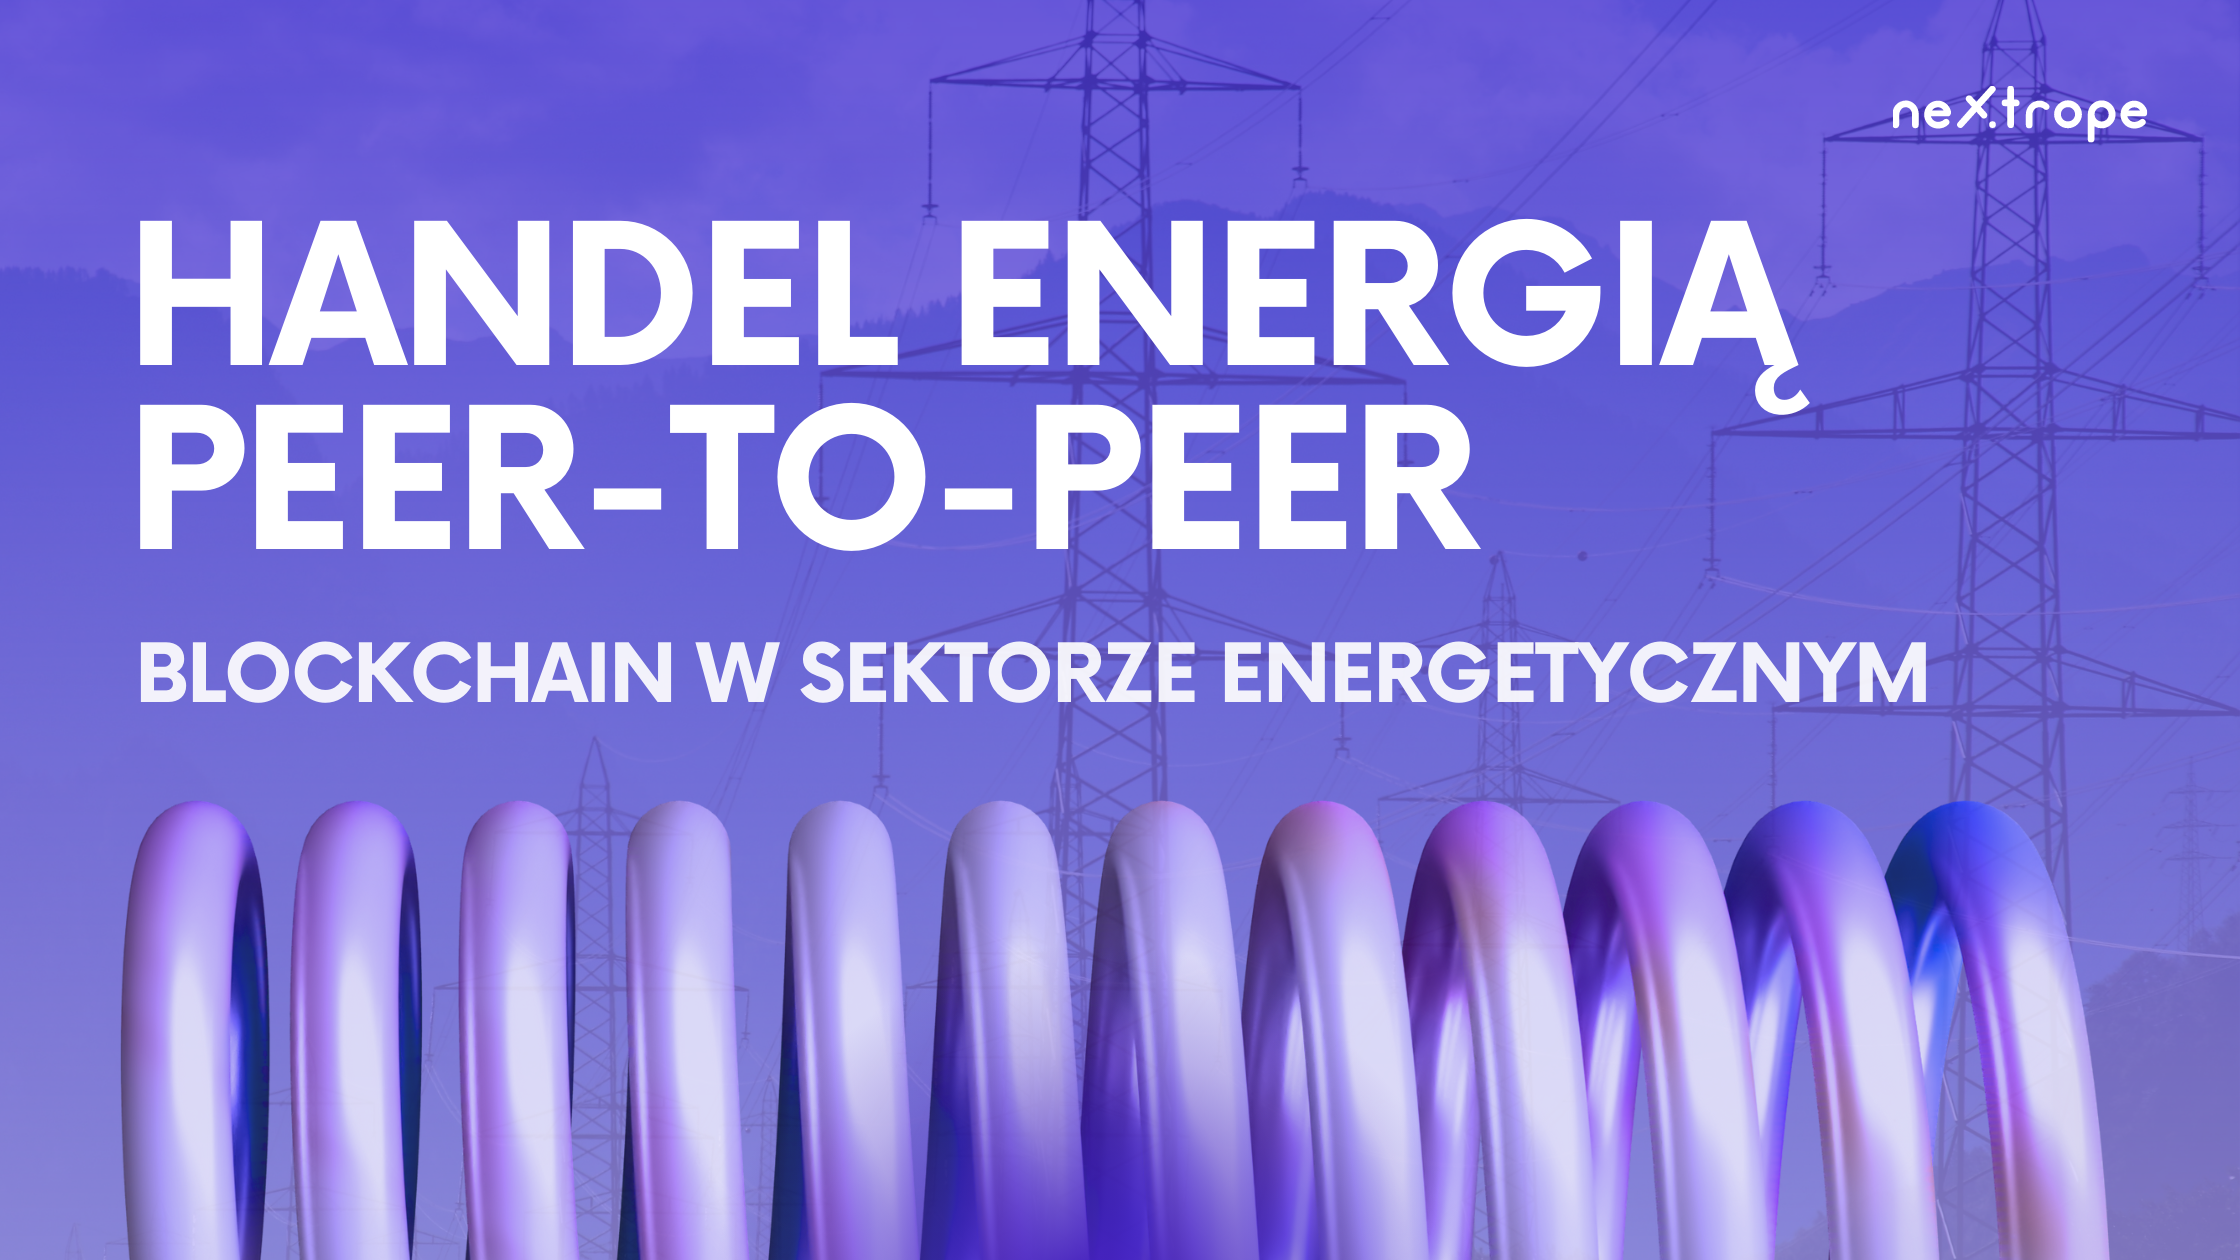 Handel energią peer-to-peer: Blockchain w sektorze energetycznym